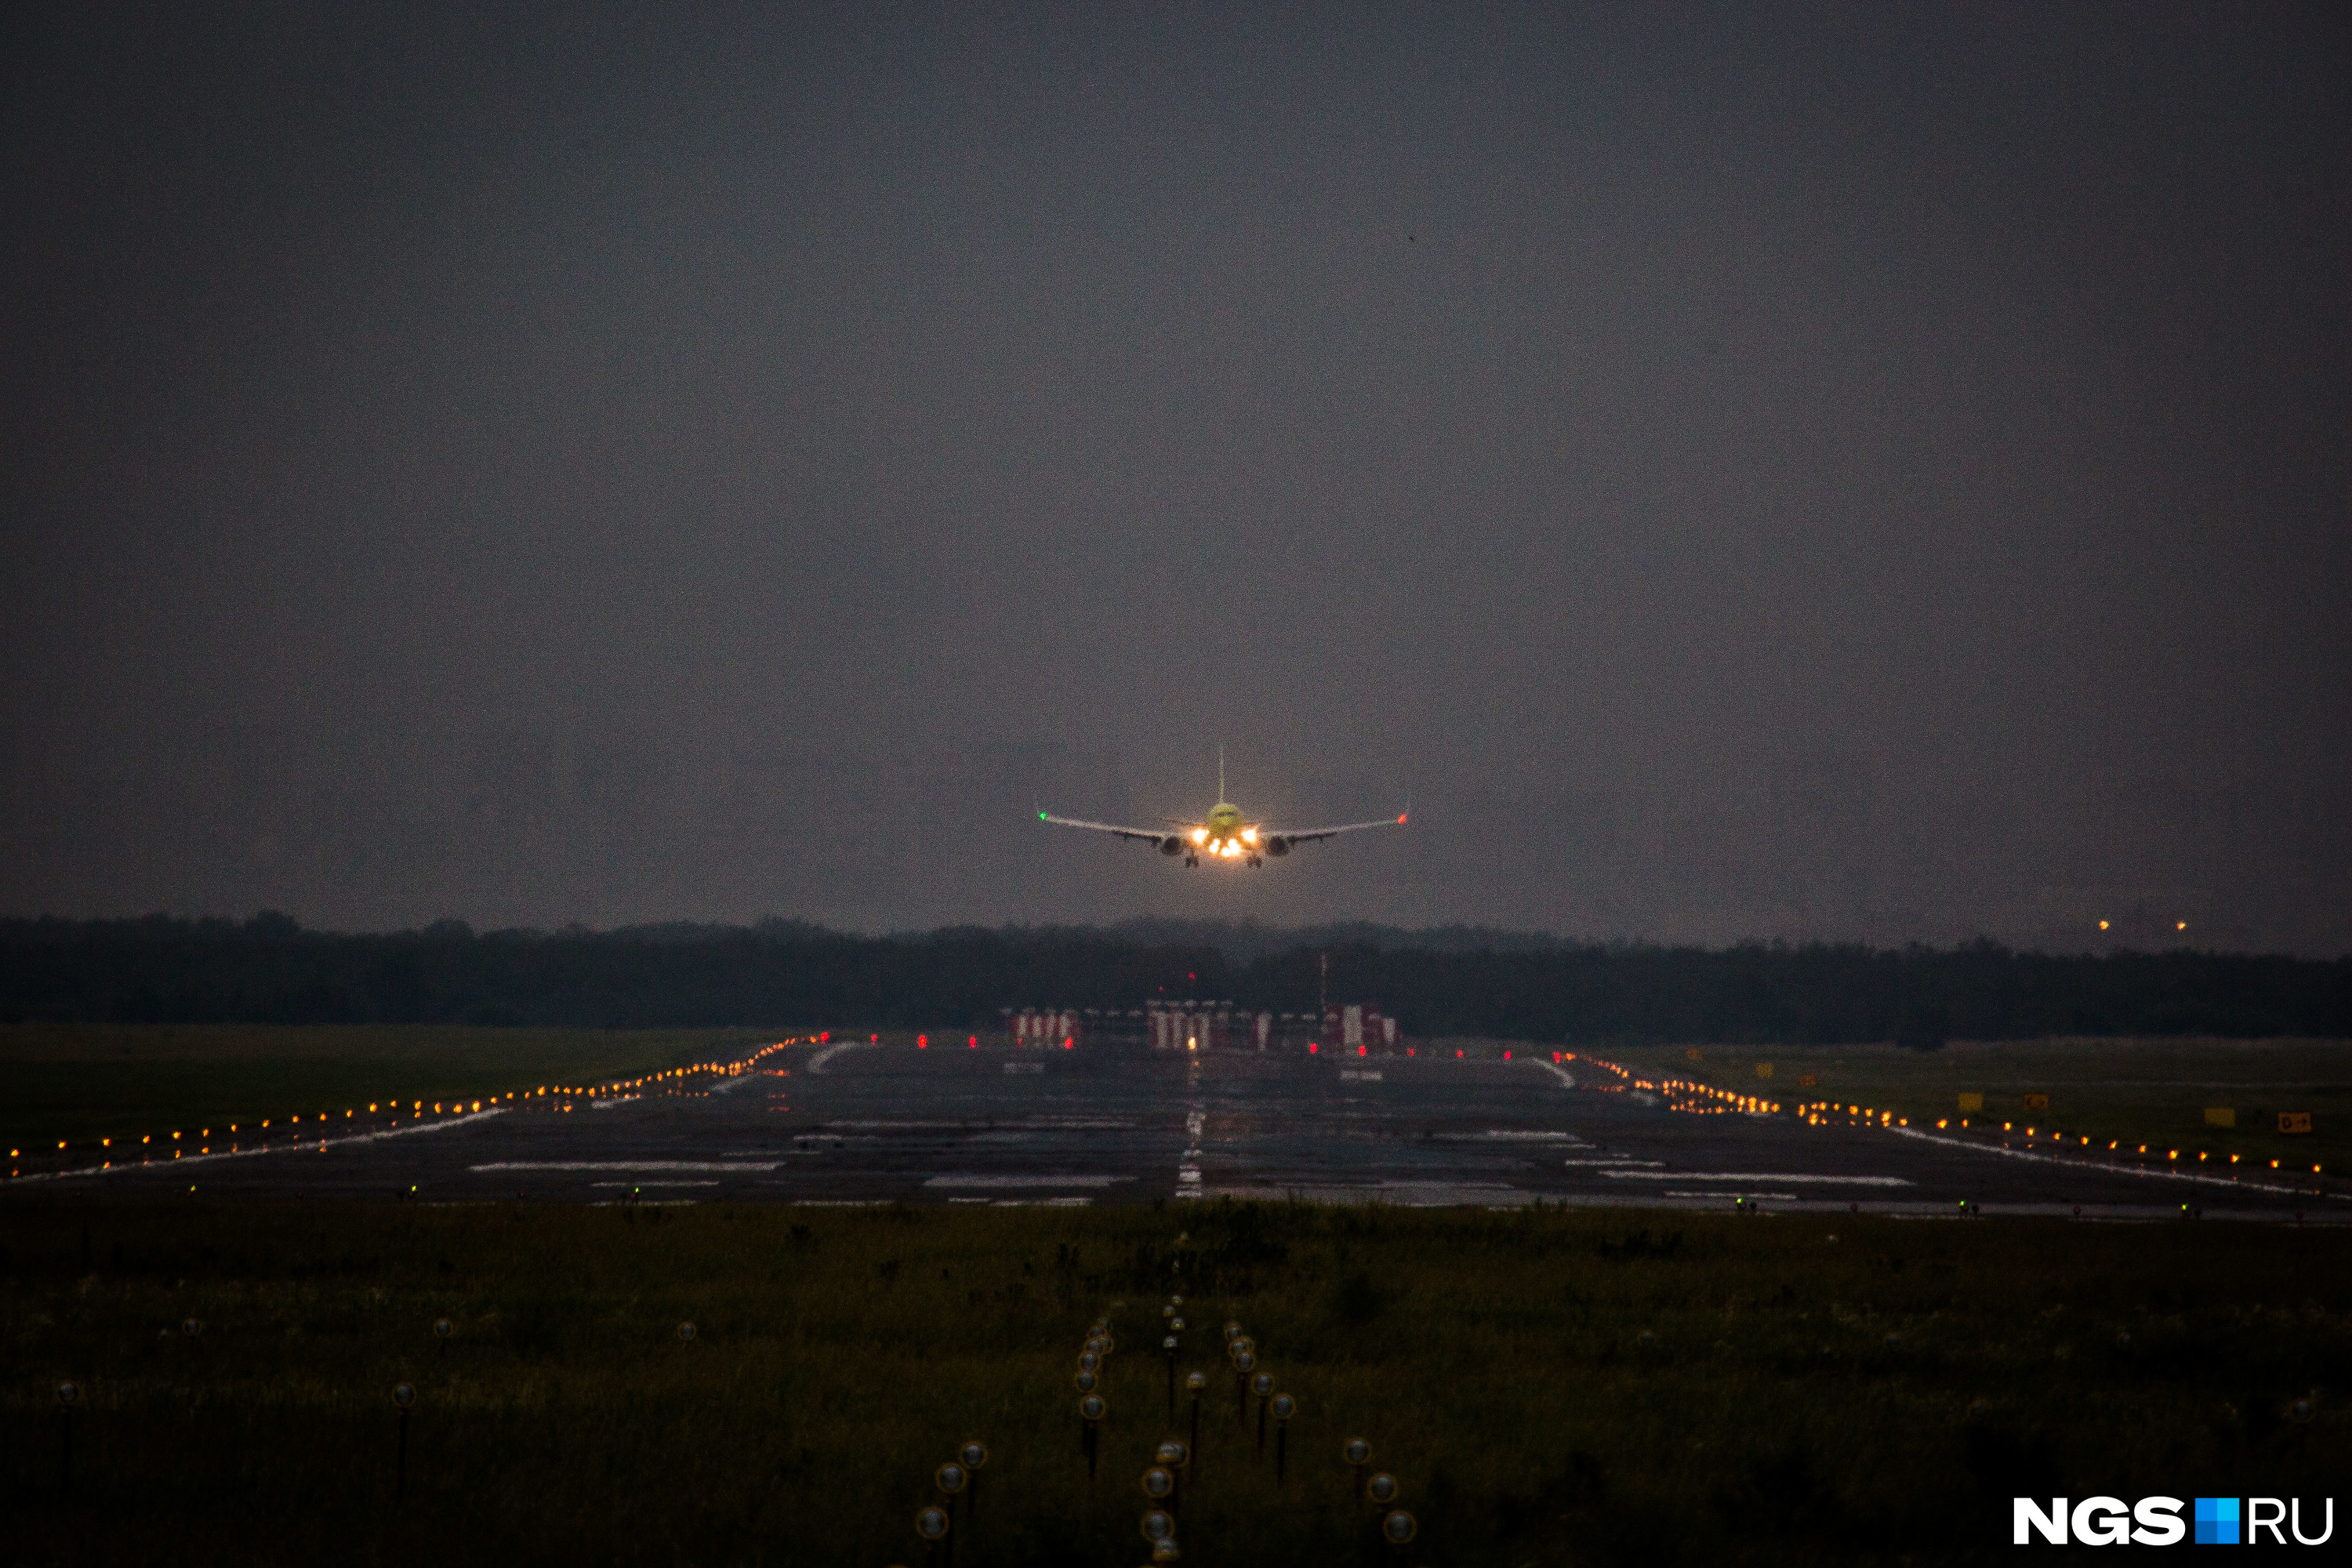 Прокуратура заинтересовалась задержкой авиарейса из Новосибирска в Таиланд — вылет ожидают 234 пассажира